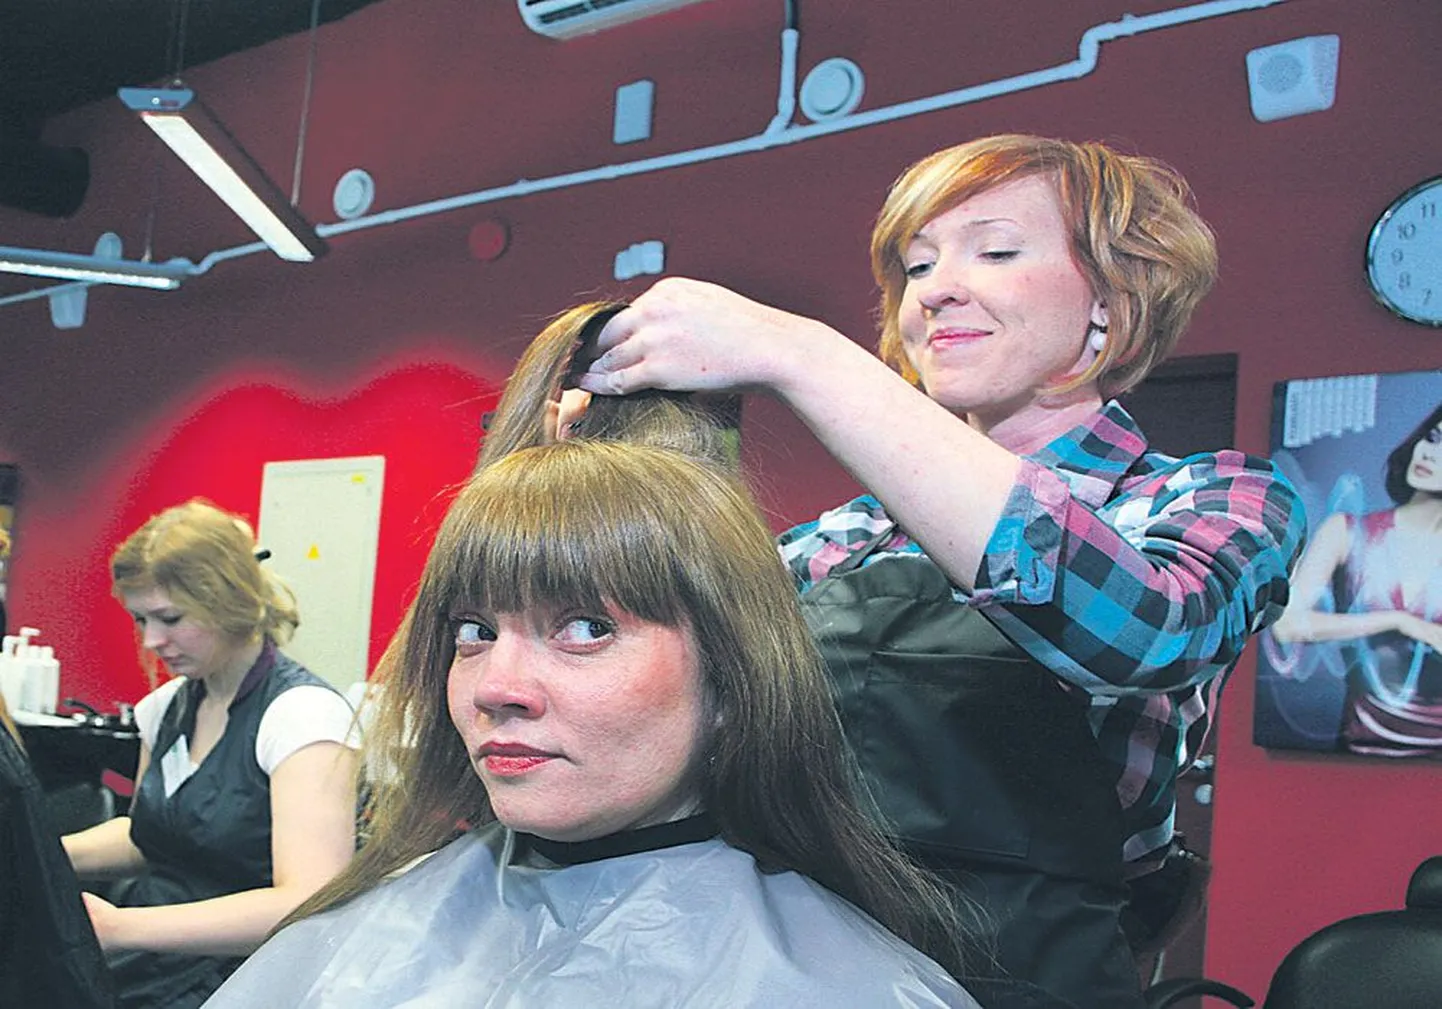 Волосы Кайли Няреп укладывает выпускница центра профобразования, новоиспеченный парикмахер Эллика    Эйдаст, у которой имеется также диплом о высшем прикладном образовании по специальности бутафор-декоратор.